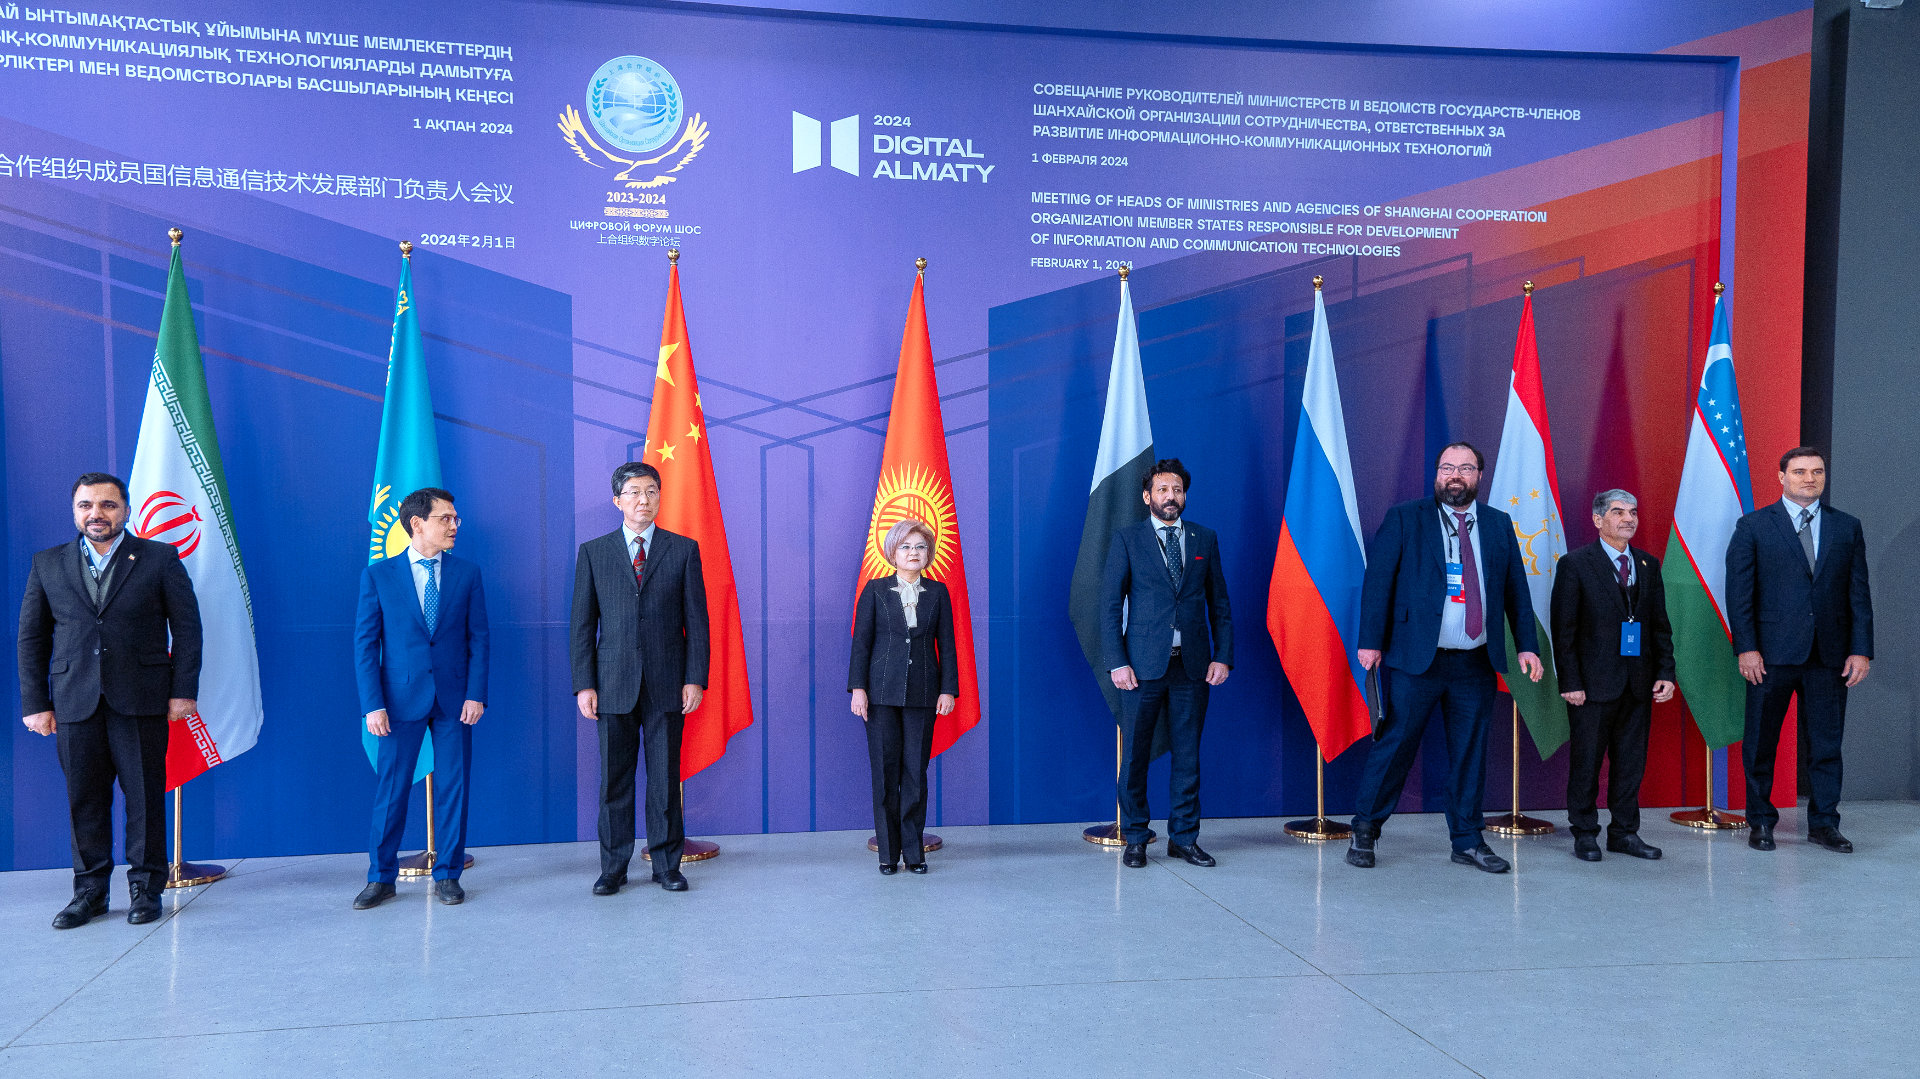 Большая Тройка на форуме Digital Almaty 2024 в Казахстане